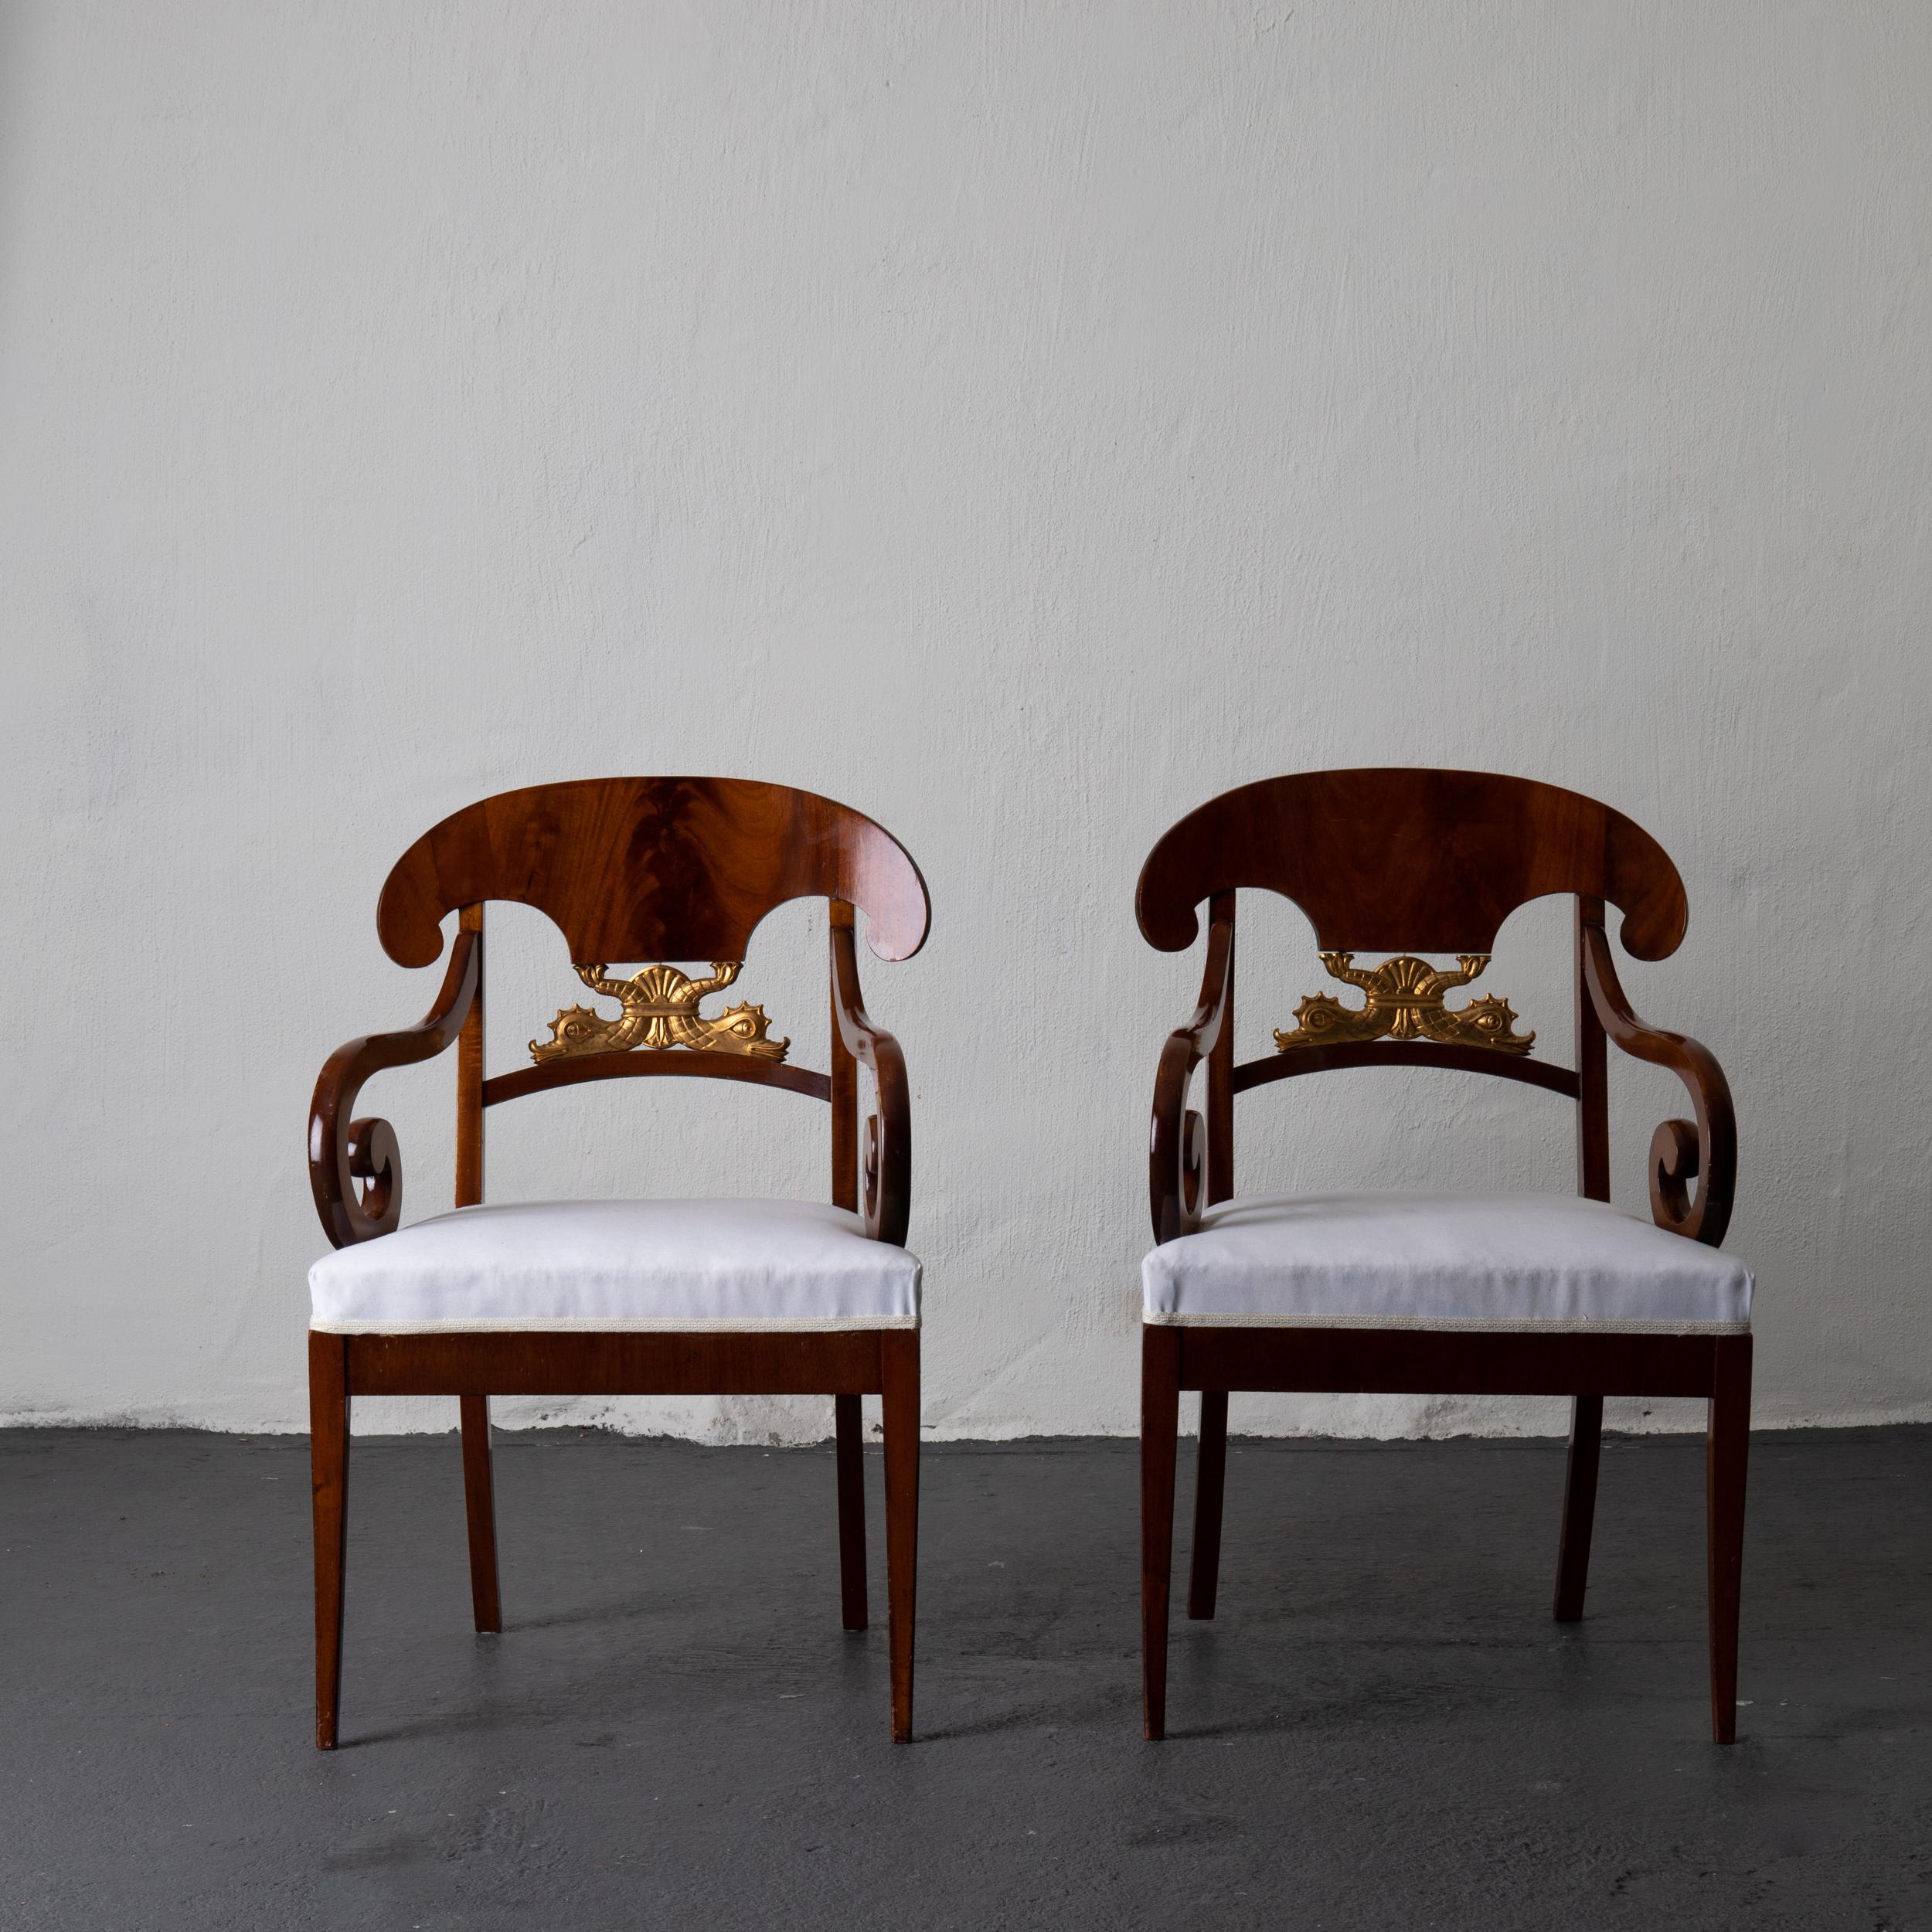 Ein Paar Sessel aus der Zeit des Empire/Karl Johan in Schweden 1810-1830. Furniert in schönem dunkelbraunem Mahagoni und verziert mit zwei vergoldeten Delphinen. Hintere Säbelbeine und gerade Vorderbeine. Gepolstert mit einem weißen